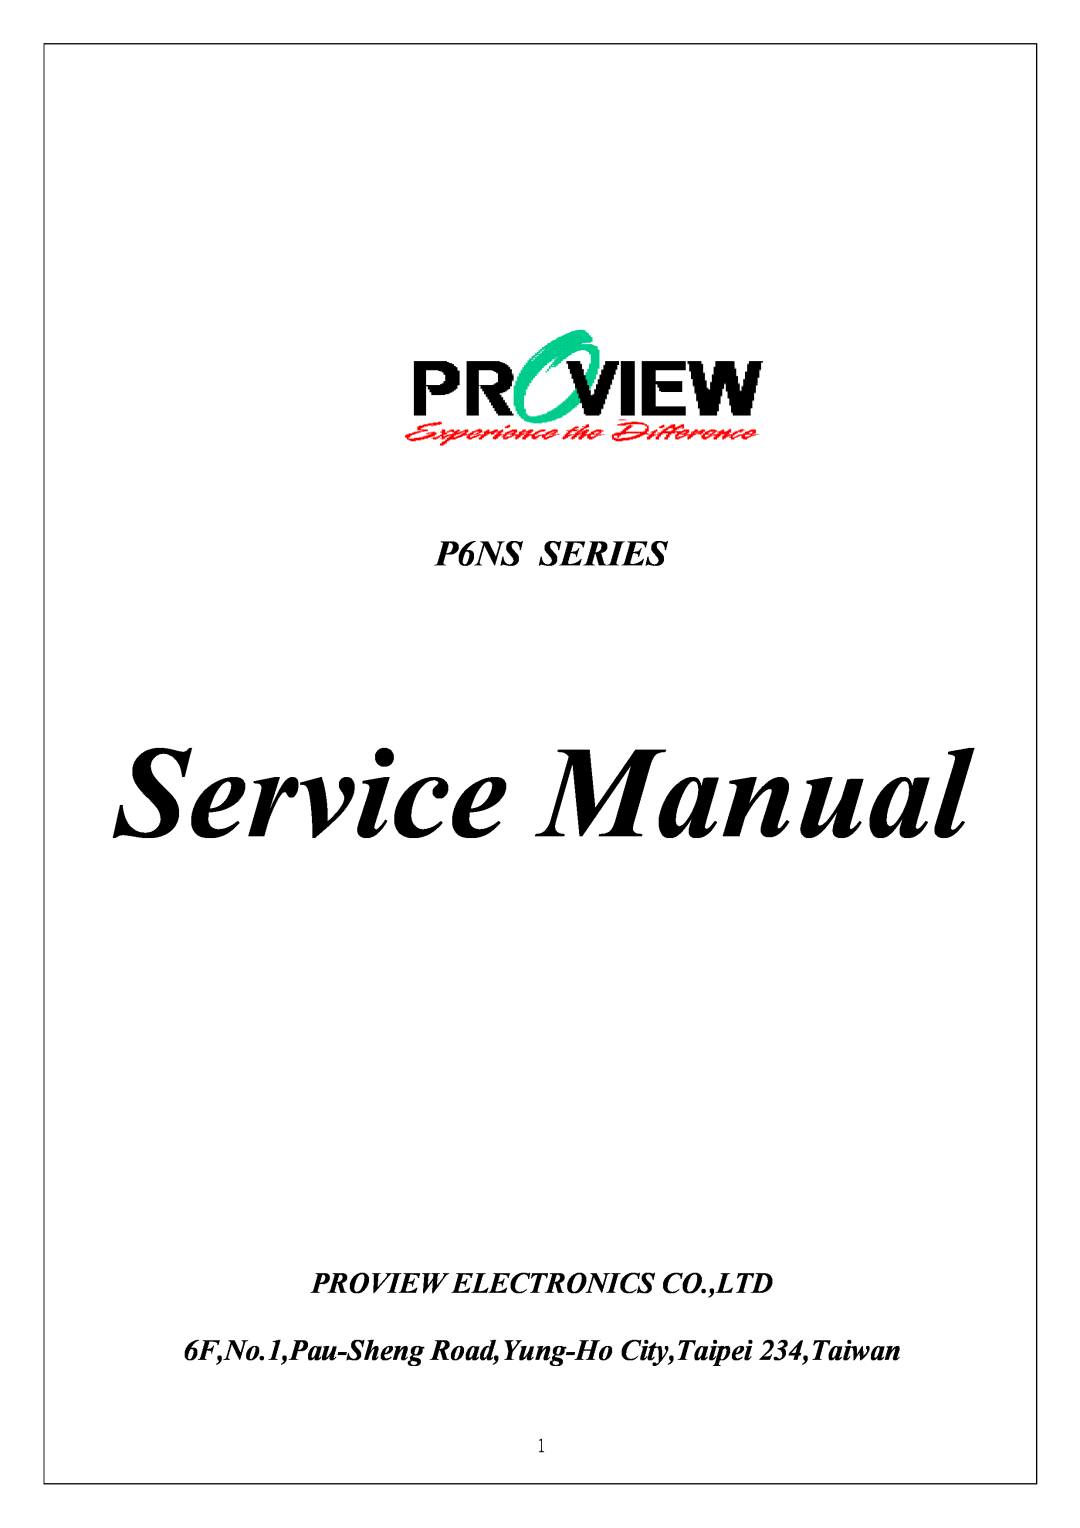 Proview P6NS Series service manual Service Manual, P6NS SERIES, 6F,No.1,Pau-Sheng Road,Yung-Ho City,Taipei 234,Taiwan 